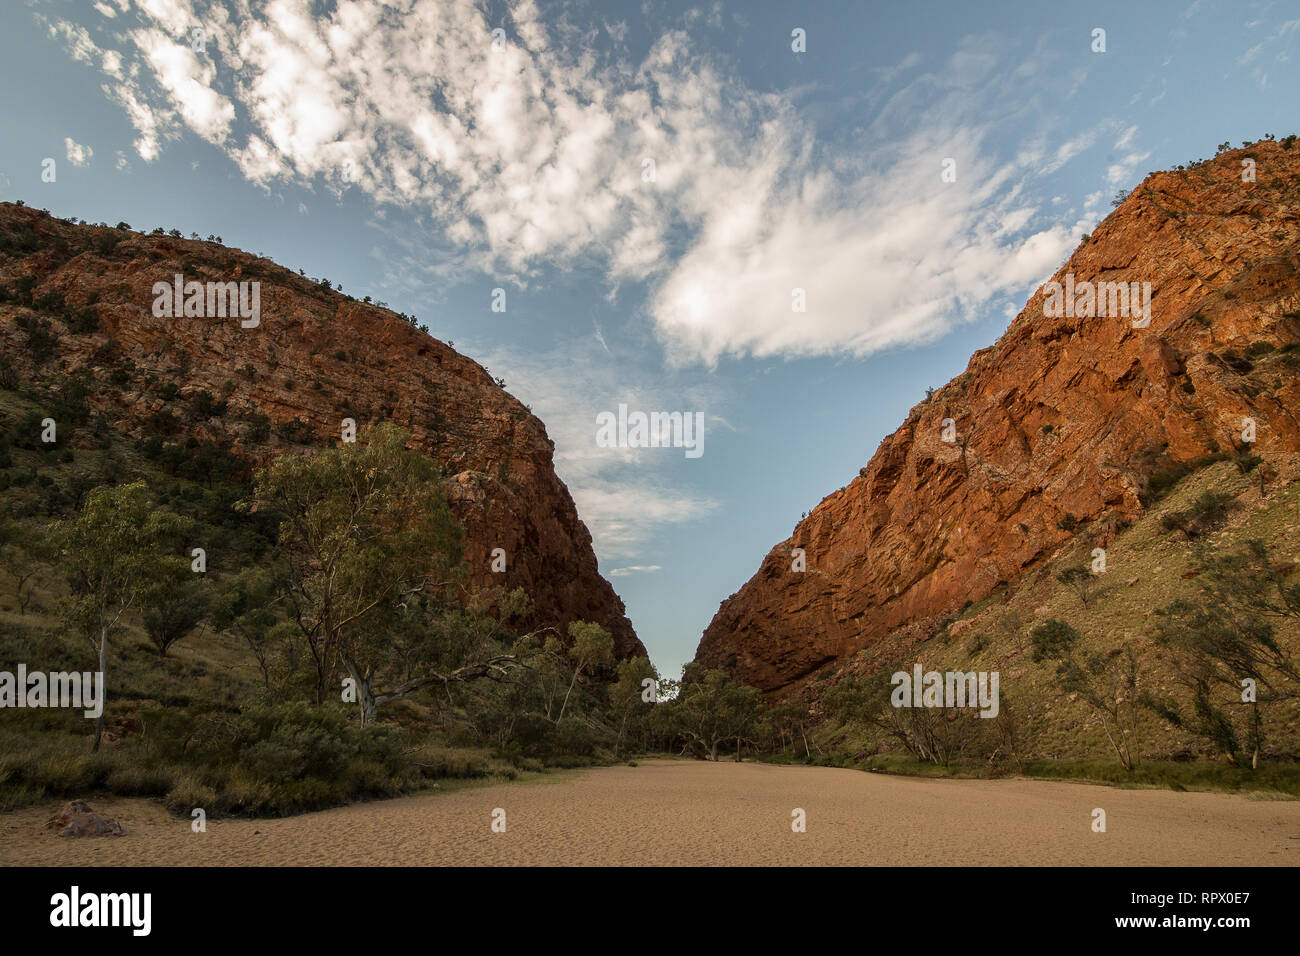 Simpsons Gap (aborigènes Arrernte : Rungutjirpa) est l'une des lacunes dans les West MacDonnell Ranges en Australie dans le Territoire du Nord. à l'ouest de Alice Springs. Banque D'Images